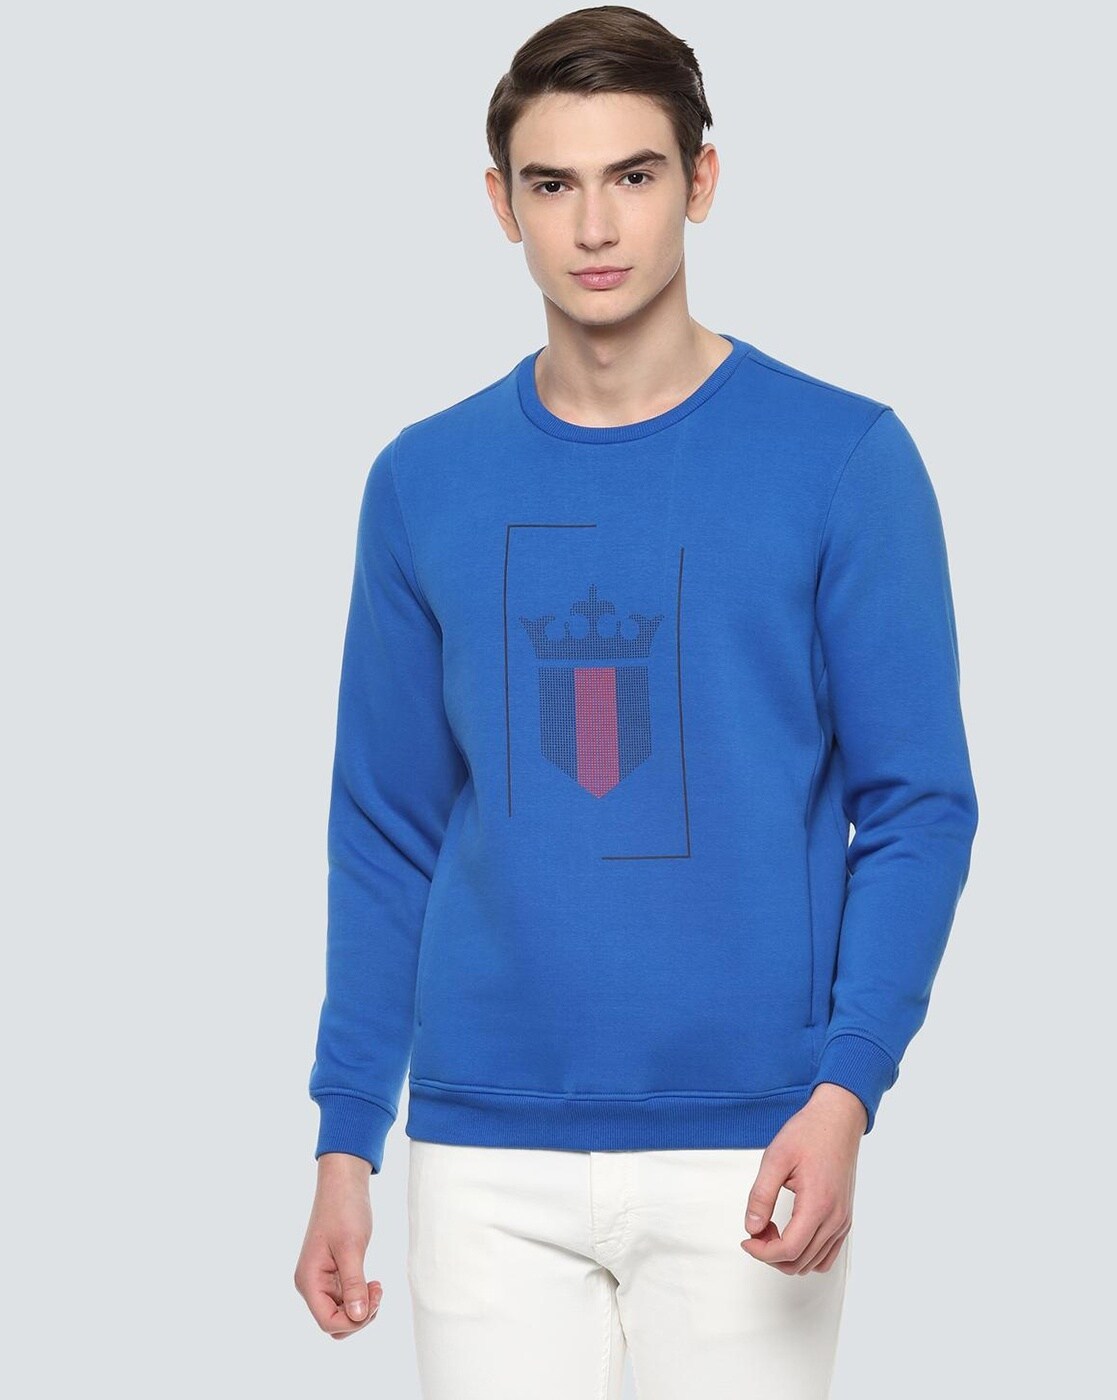 Buy Blue Sweatshirt & Hoodies for Men by LOUIS PHILIPPE Online